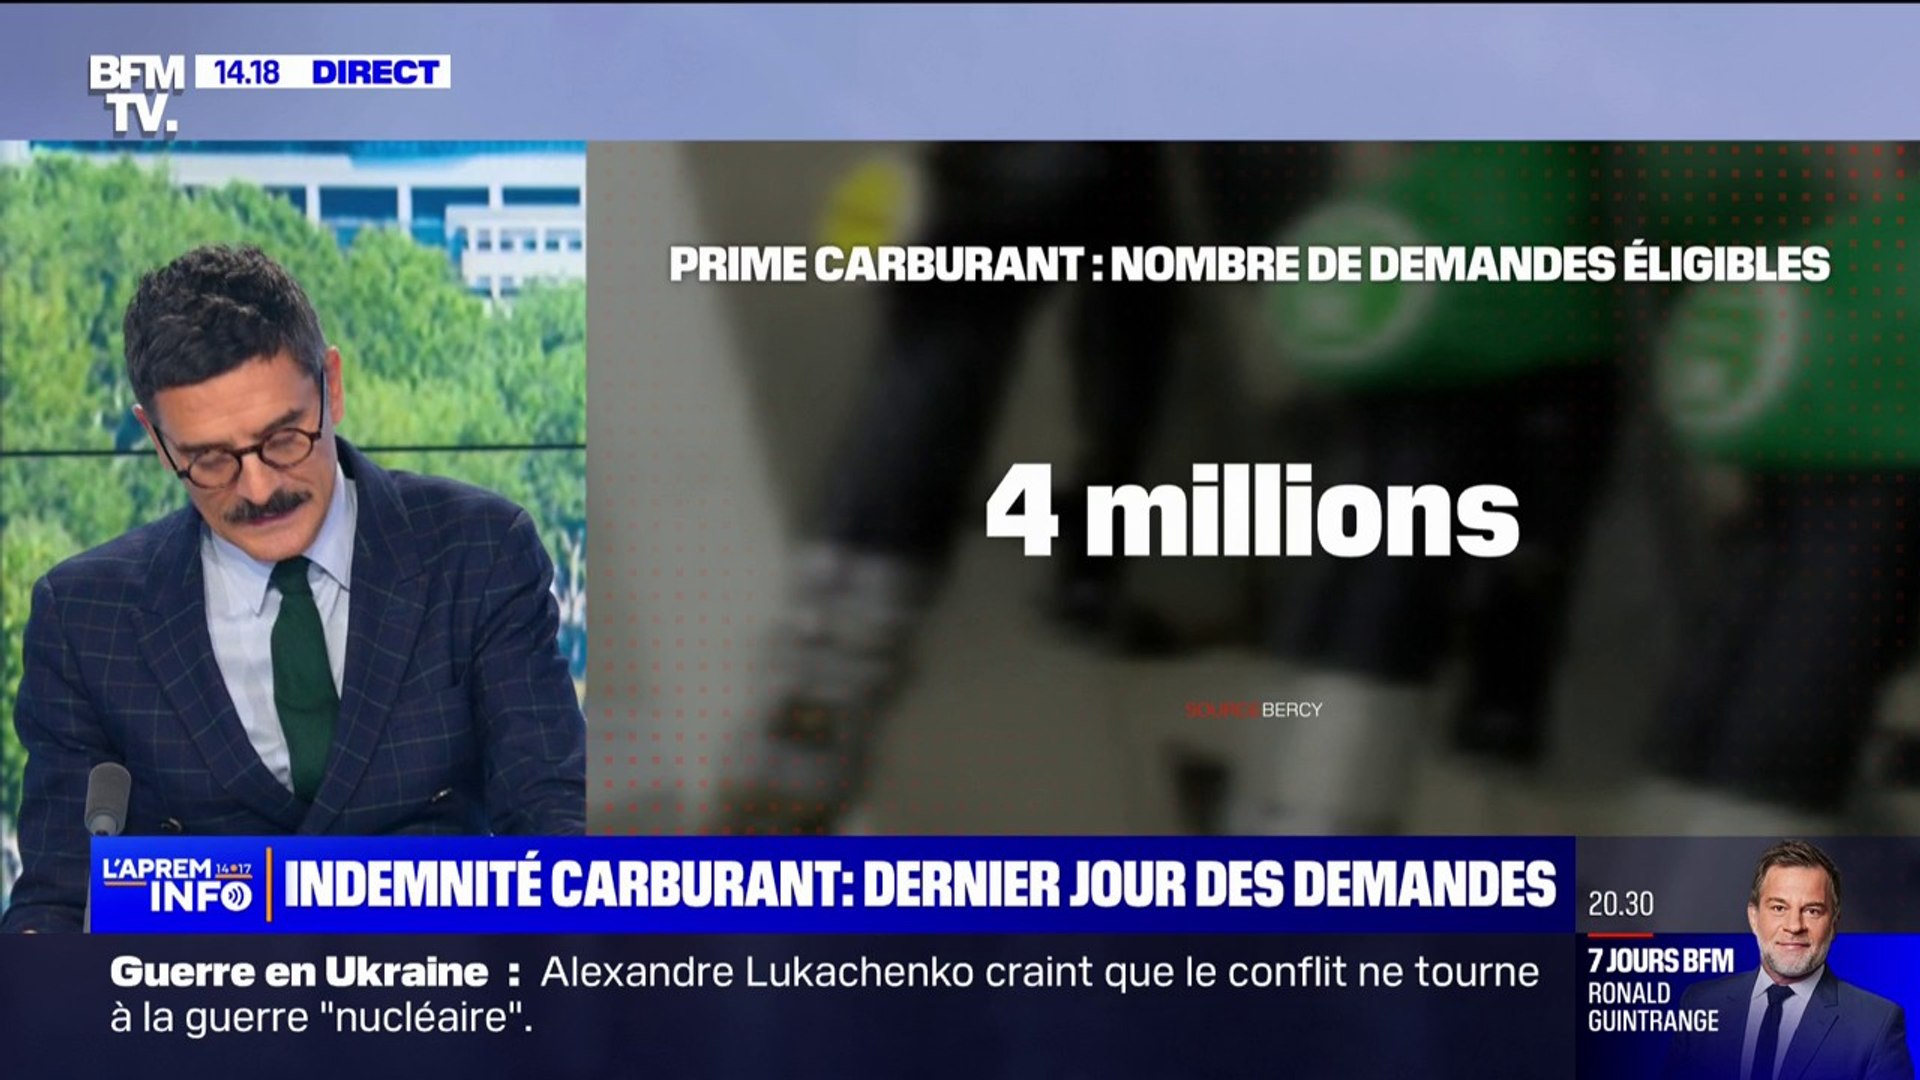 Indemnité carburant: 4 millions de Français sur 7 millions de demandes sont  éligibles à la prime - Vidéo Dailymotion